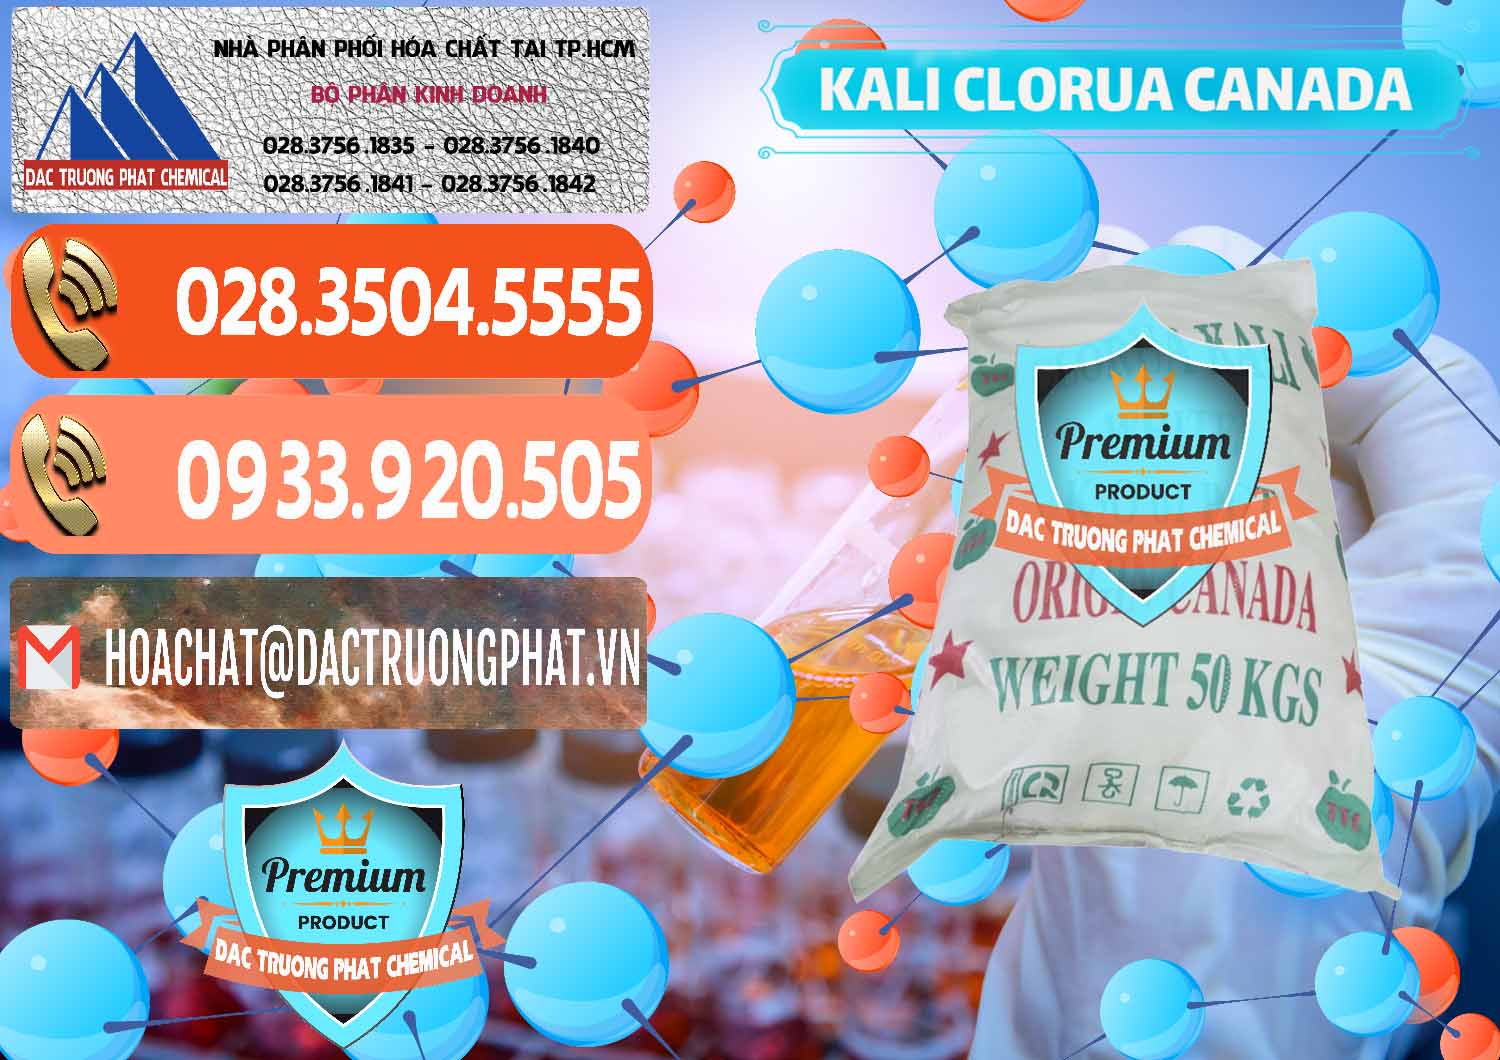 Đơn vị bán - phân phối KCL – Kali Clorua Trắng Canada - 0437 - Cty kinh doanh & cung cấp hóa chất tại TP.HCM - hoachatmientay.com